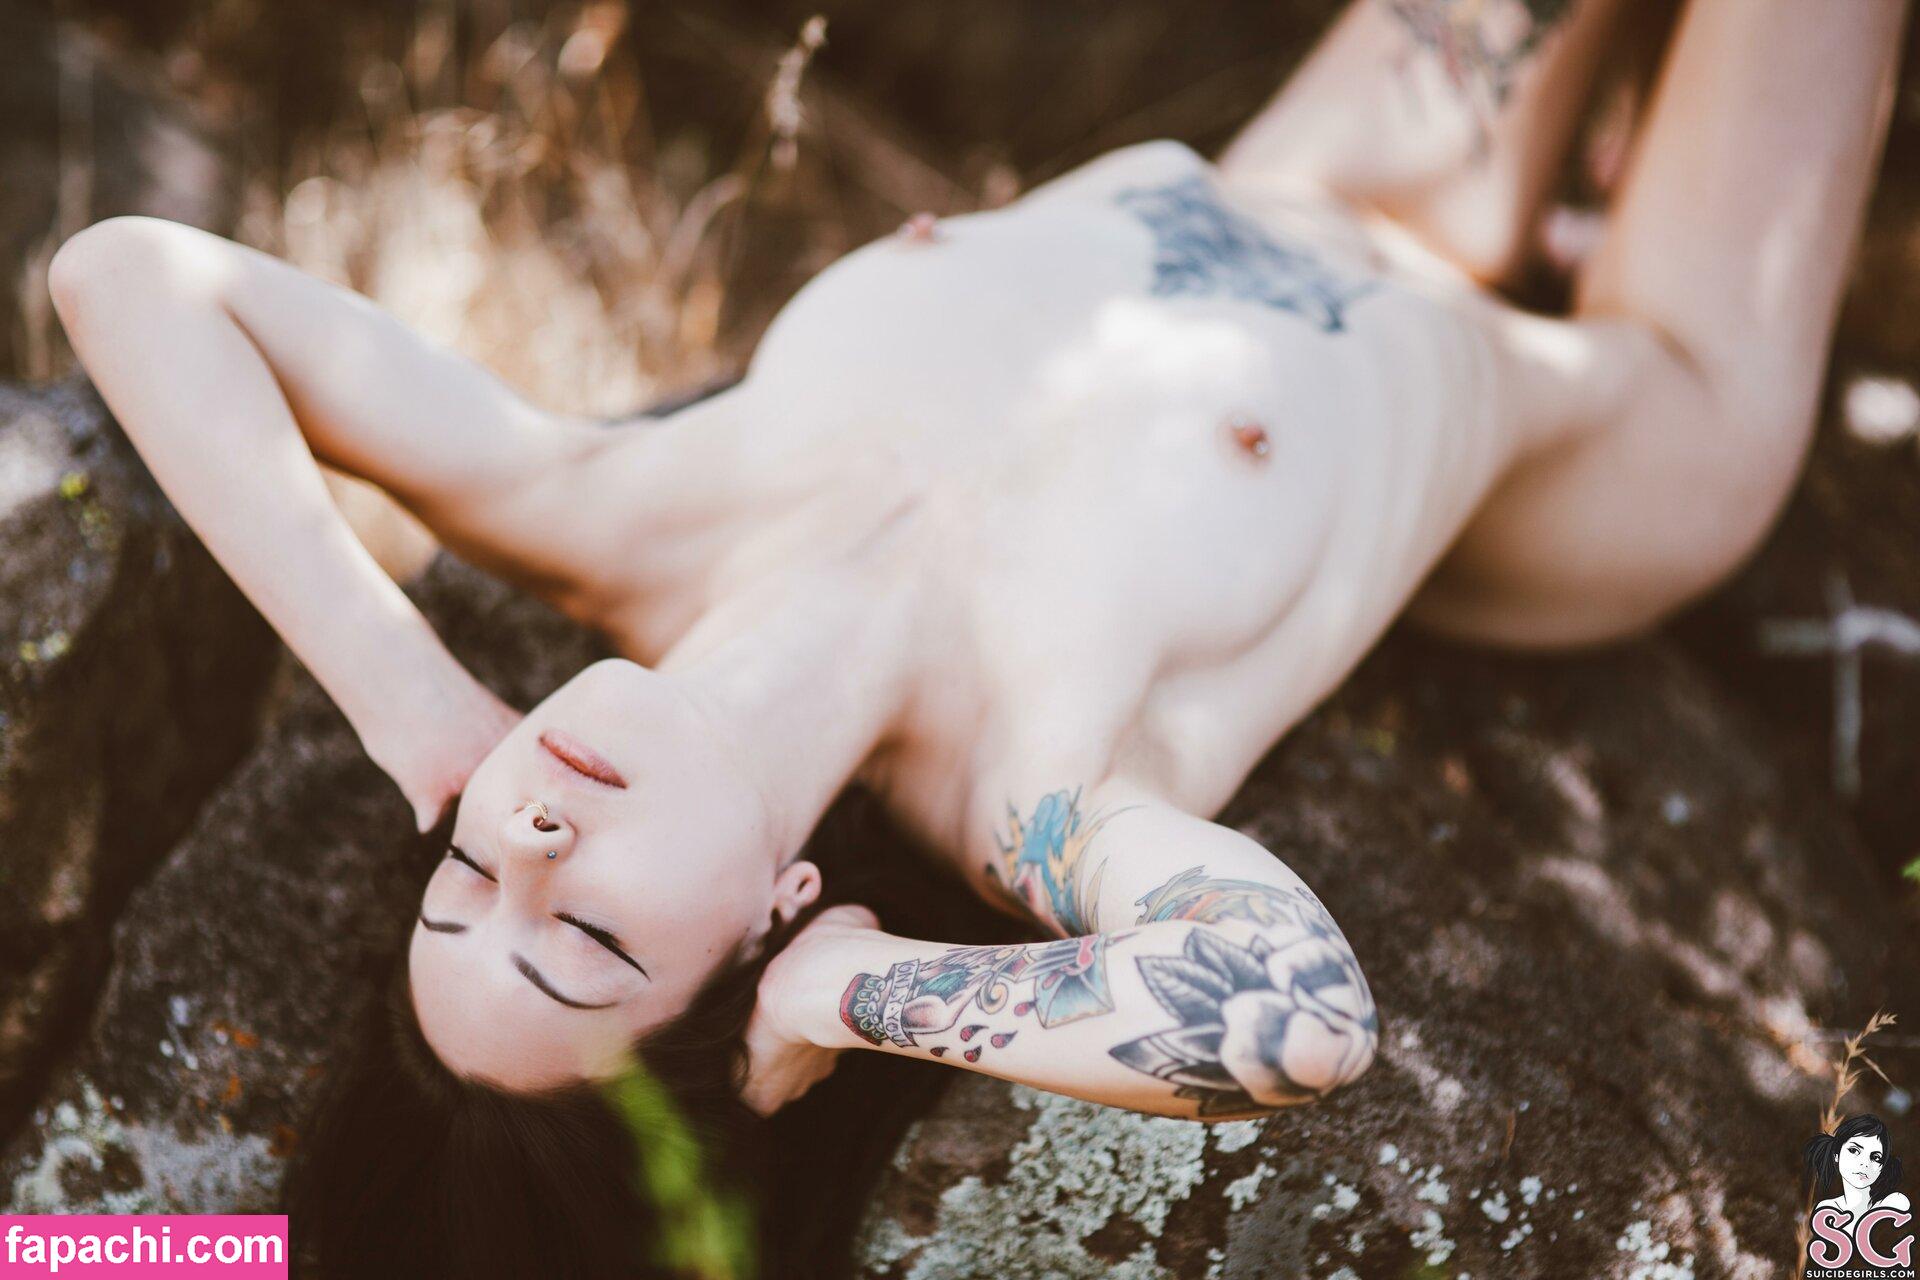 Feryn Suicide / ferynandwolfe / ferynsuicide leaked nude photo #0409 from OnlyFans/Patreon